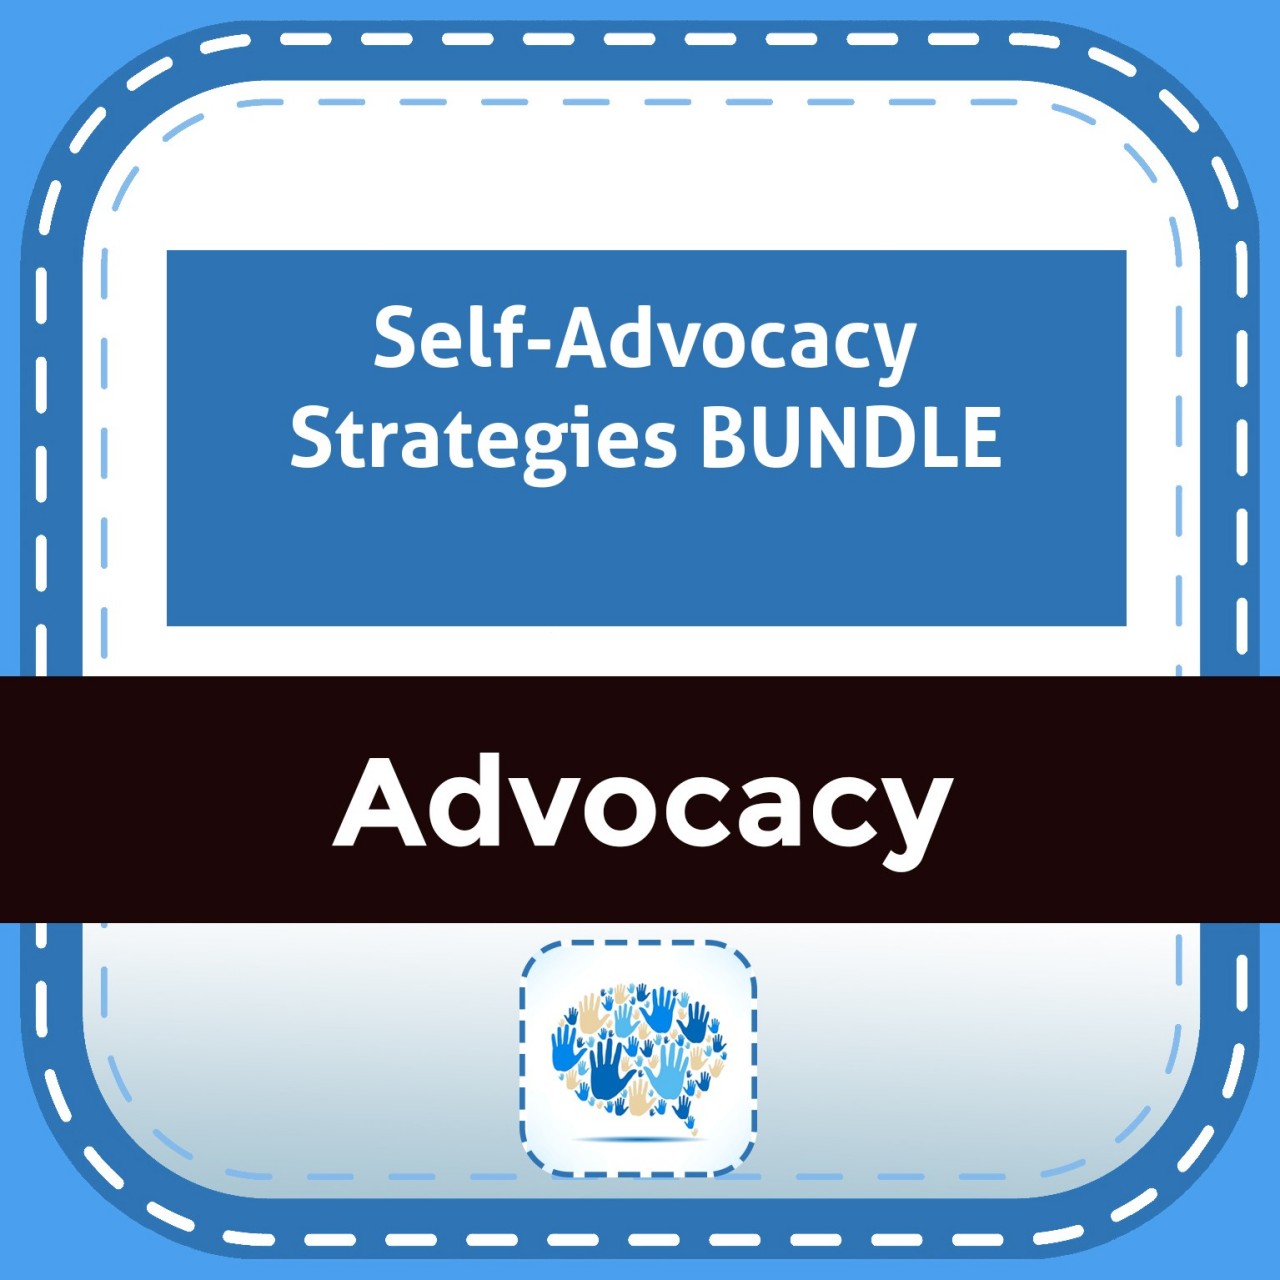 Self-Advocacy Strategies BUNDLE